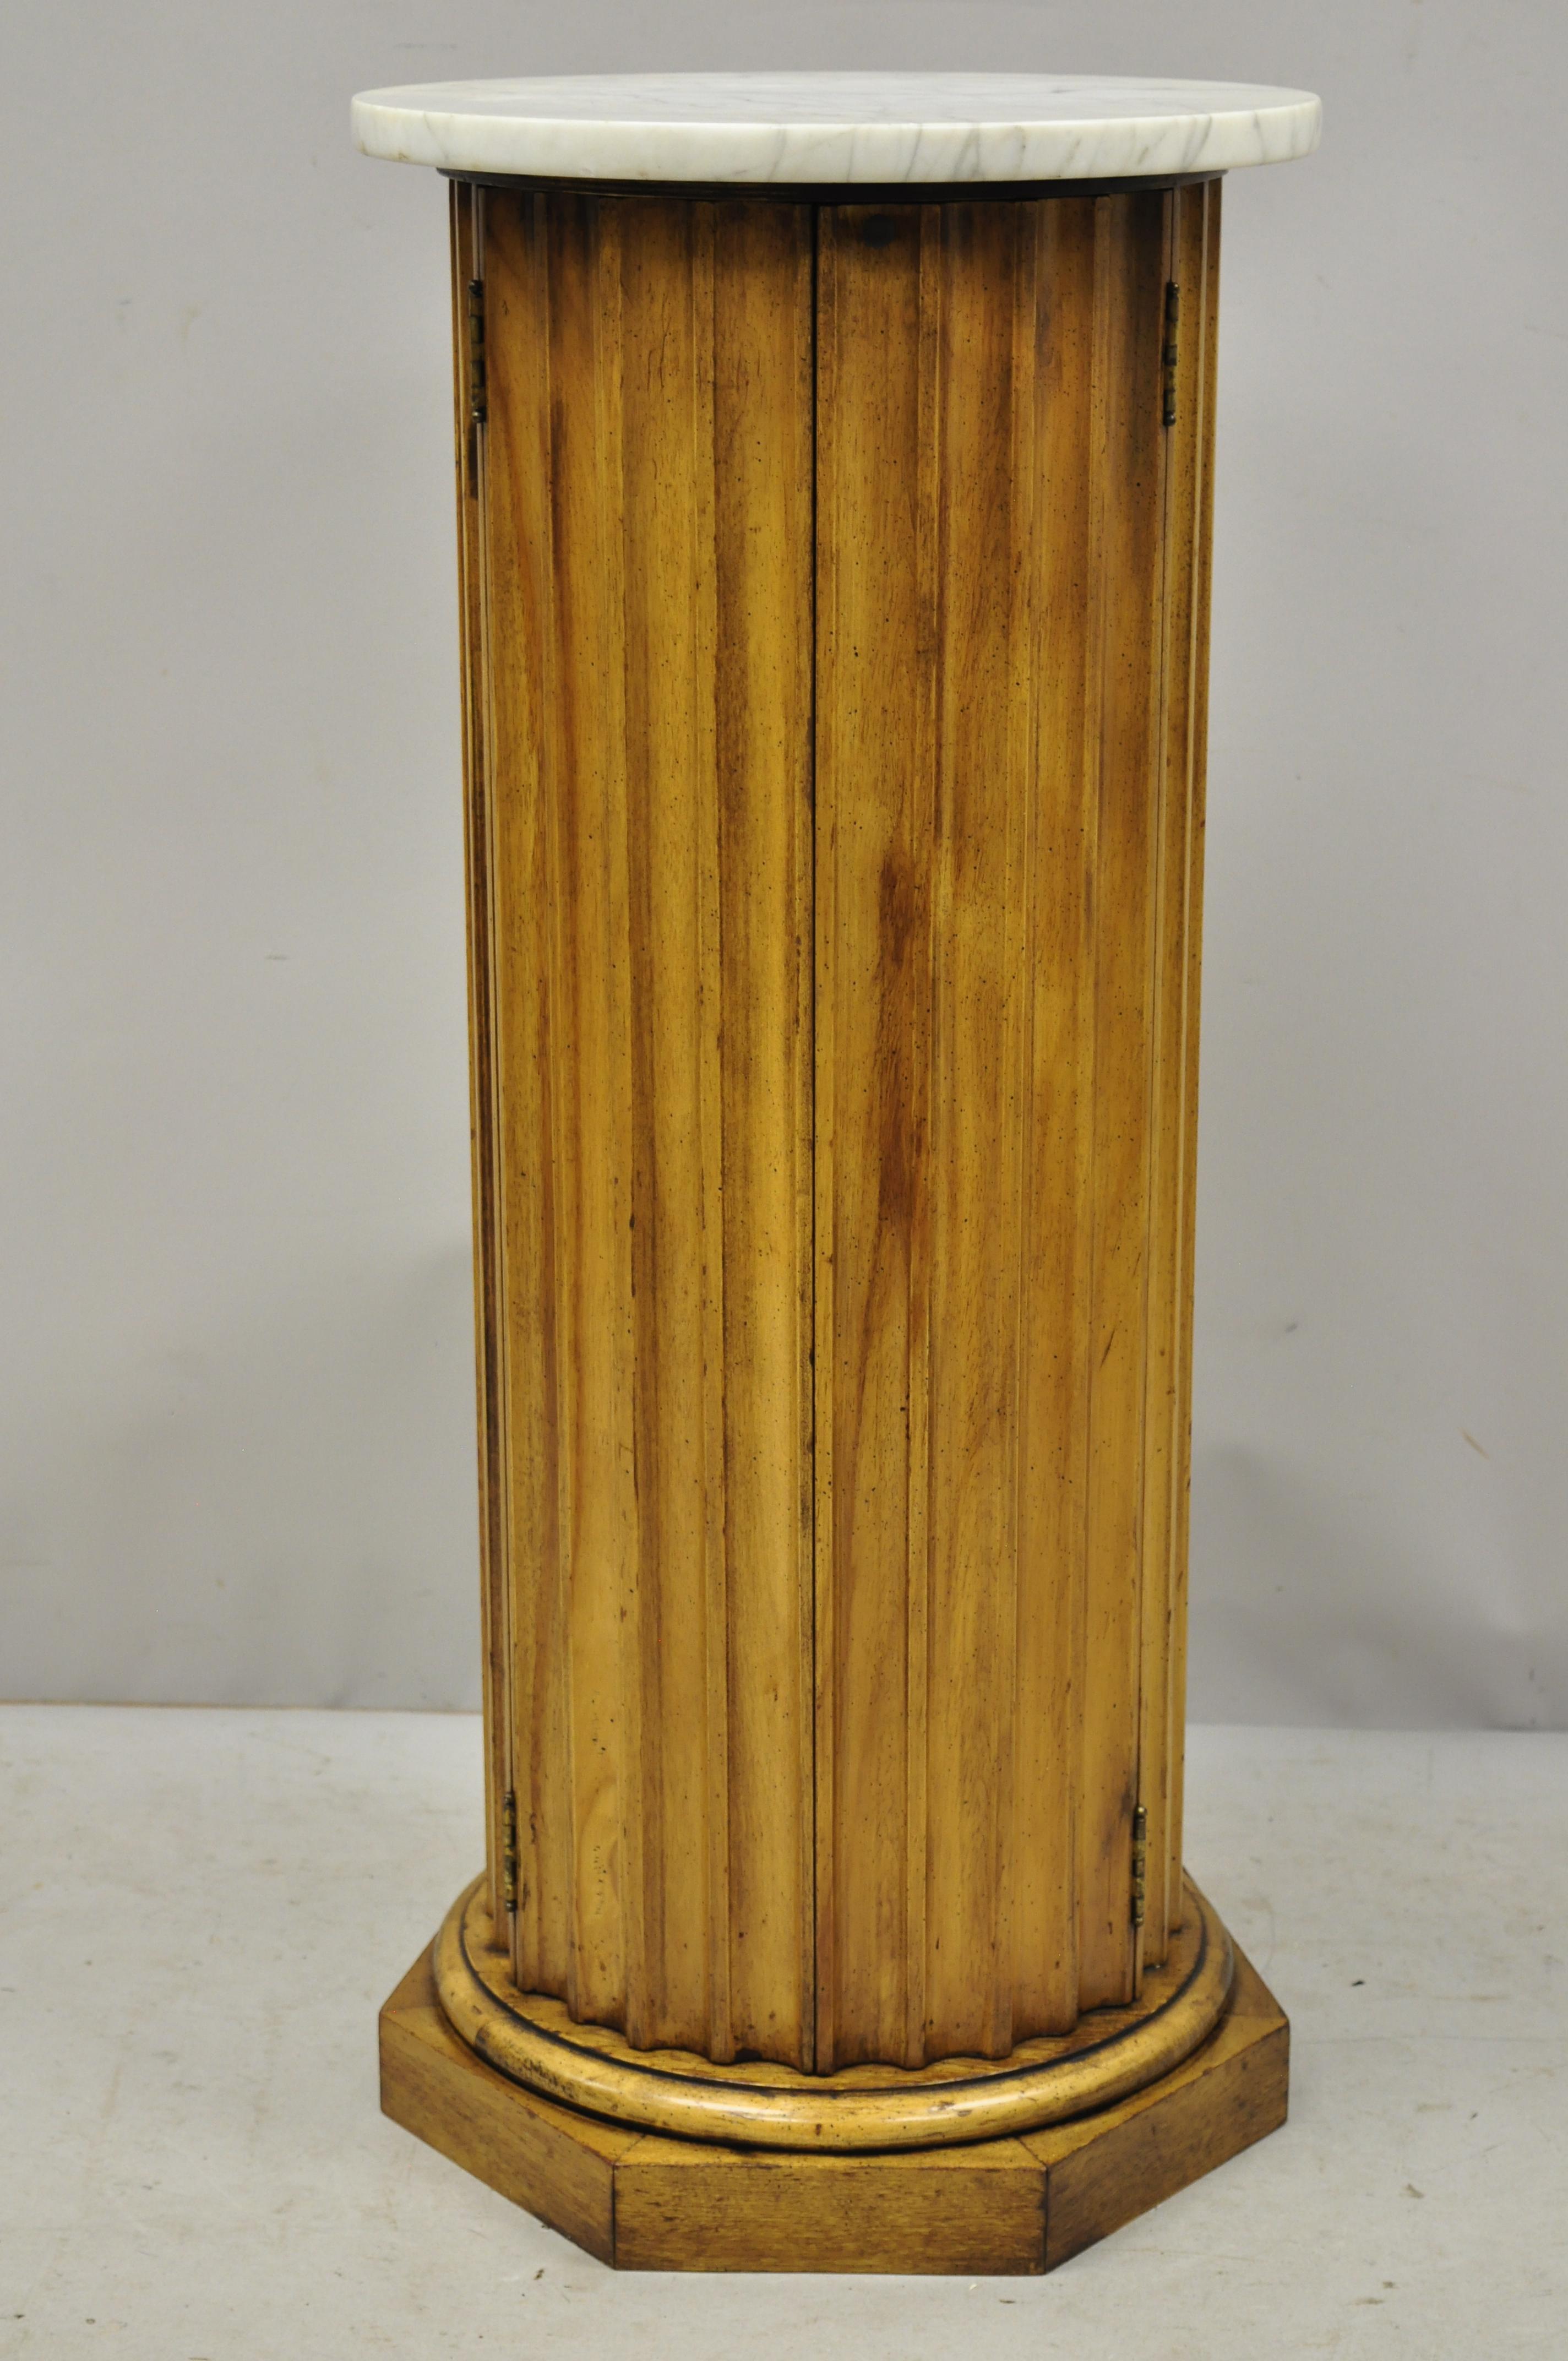 round wooden pedestal stand